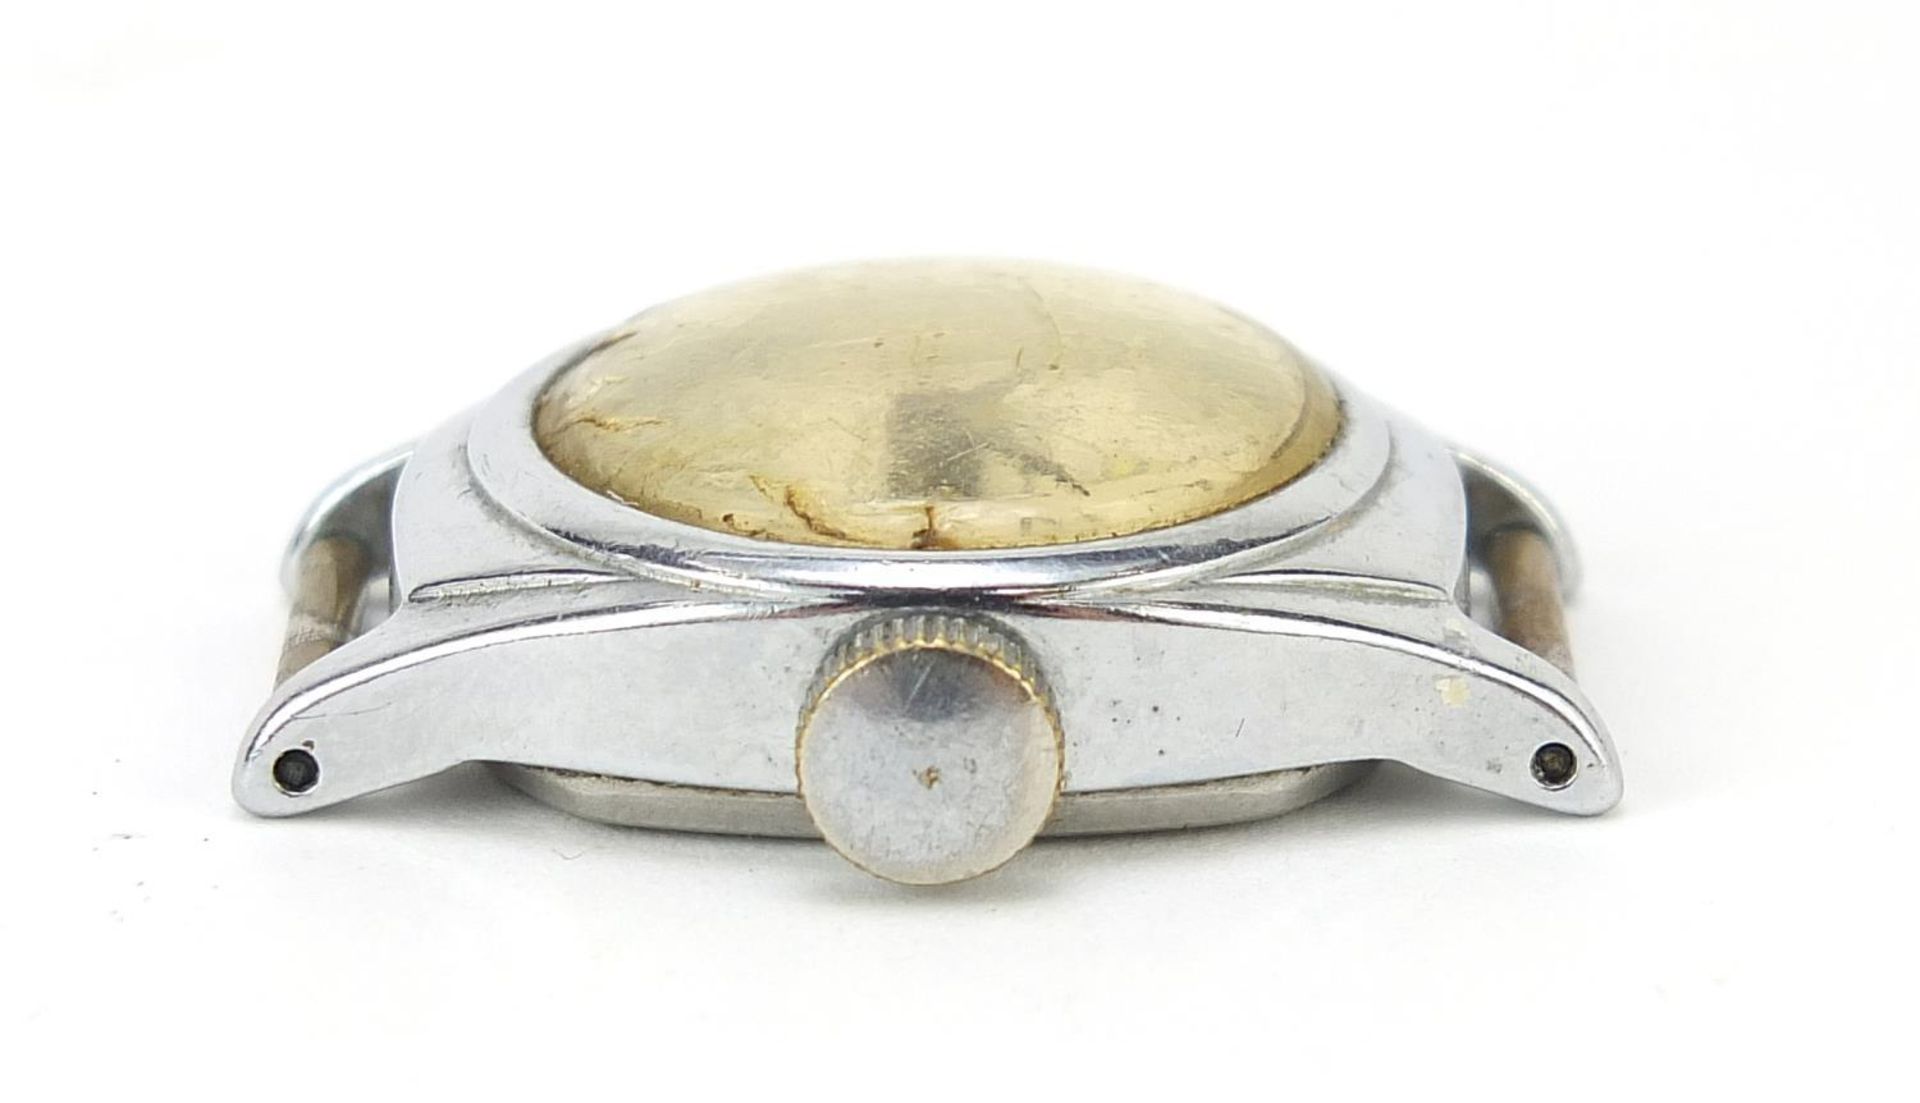 Timex, vintage Walt Disney Cinderella wristwatch, the case 23mm wide - Image 2 of 3